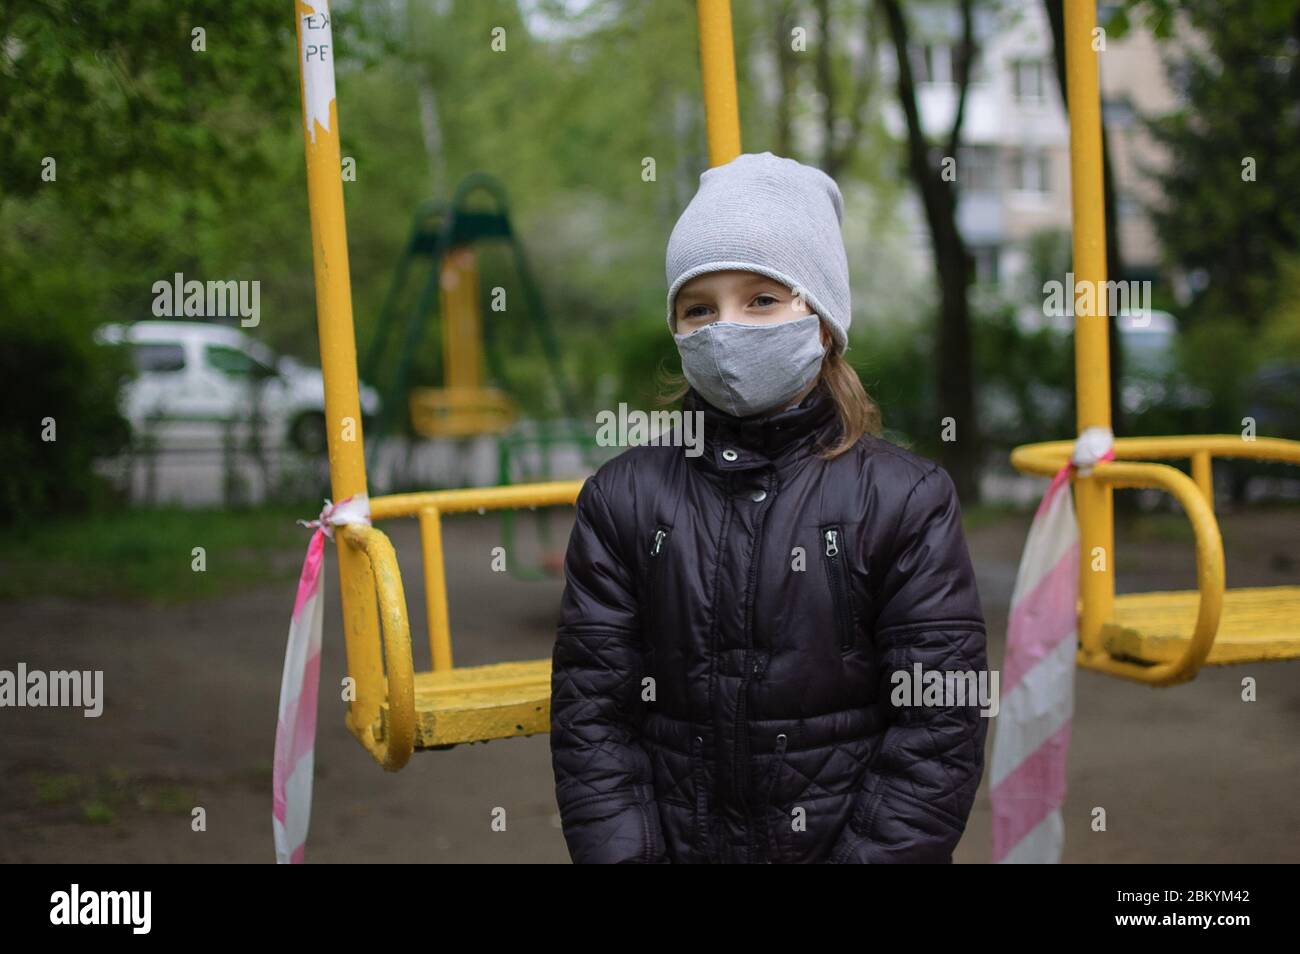 Porträt von traurigen Mädchen in grauen Gesichtsmaske und dunkle Jacke auf  geschlossenen Spielplatz im Freien. Quarantänemaßnahmen gegen COVID-19.  Coronavirus-Pandemie Stockfotografie - Alamy